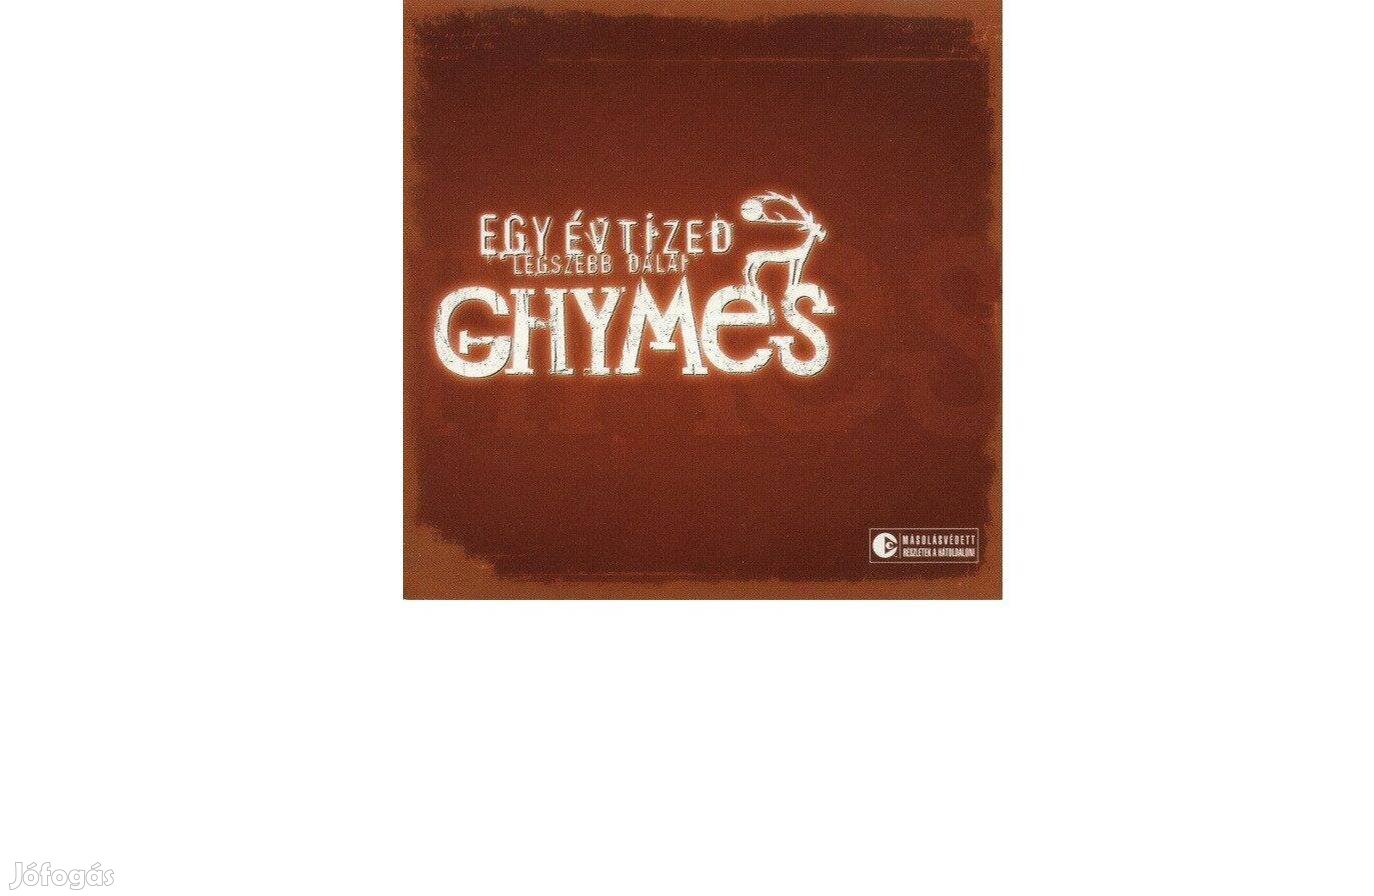 Ghymes Egy évtized legszebb dalai, bontatlan CD